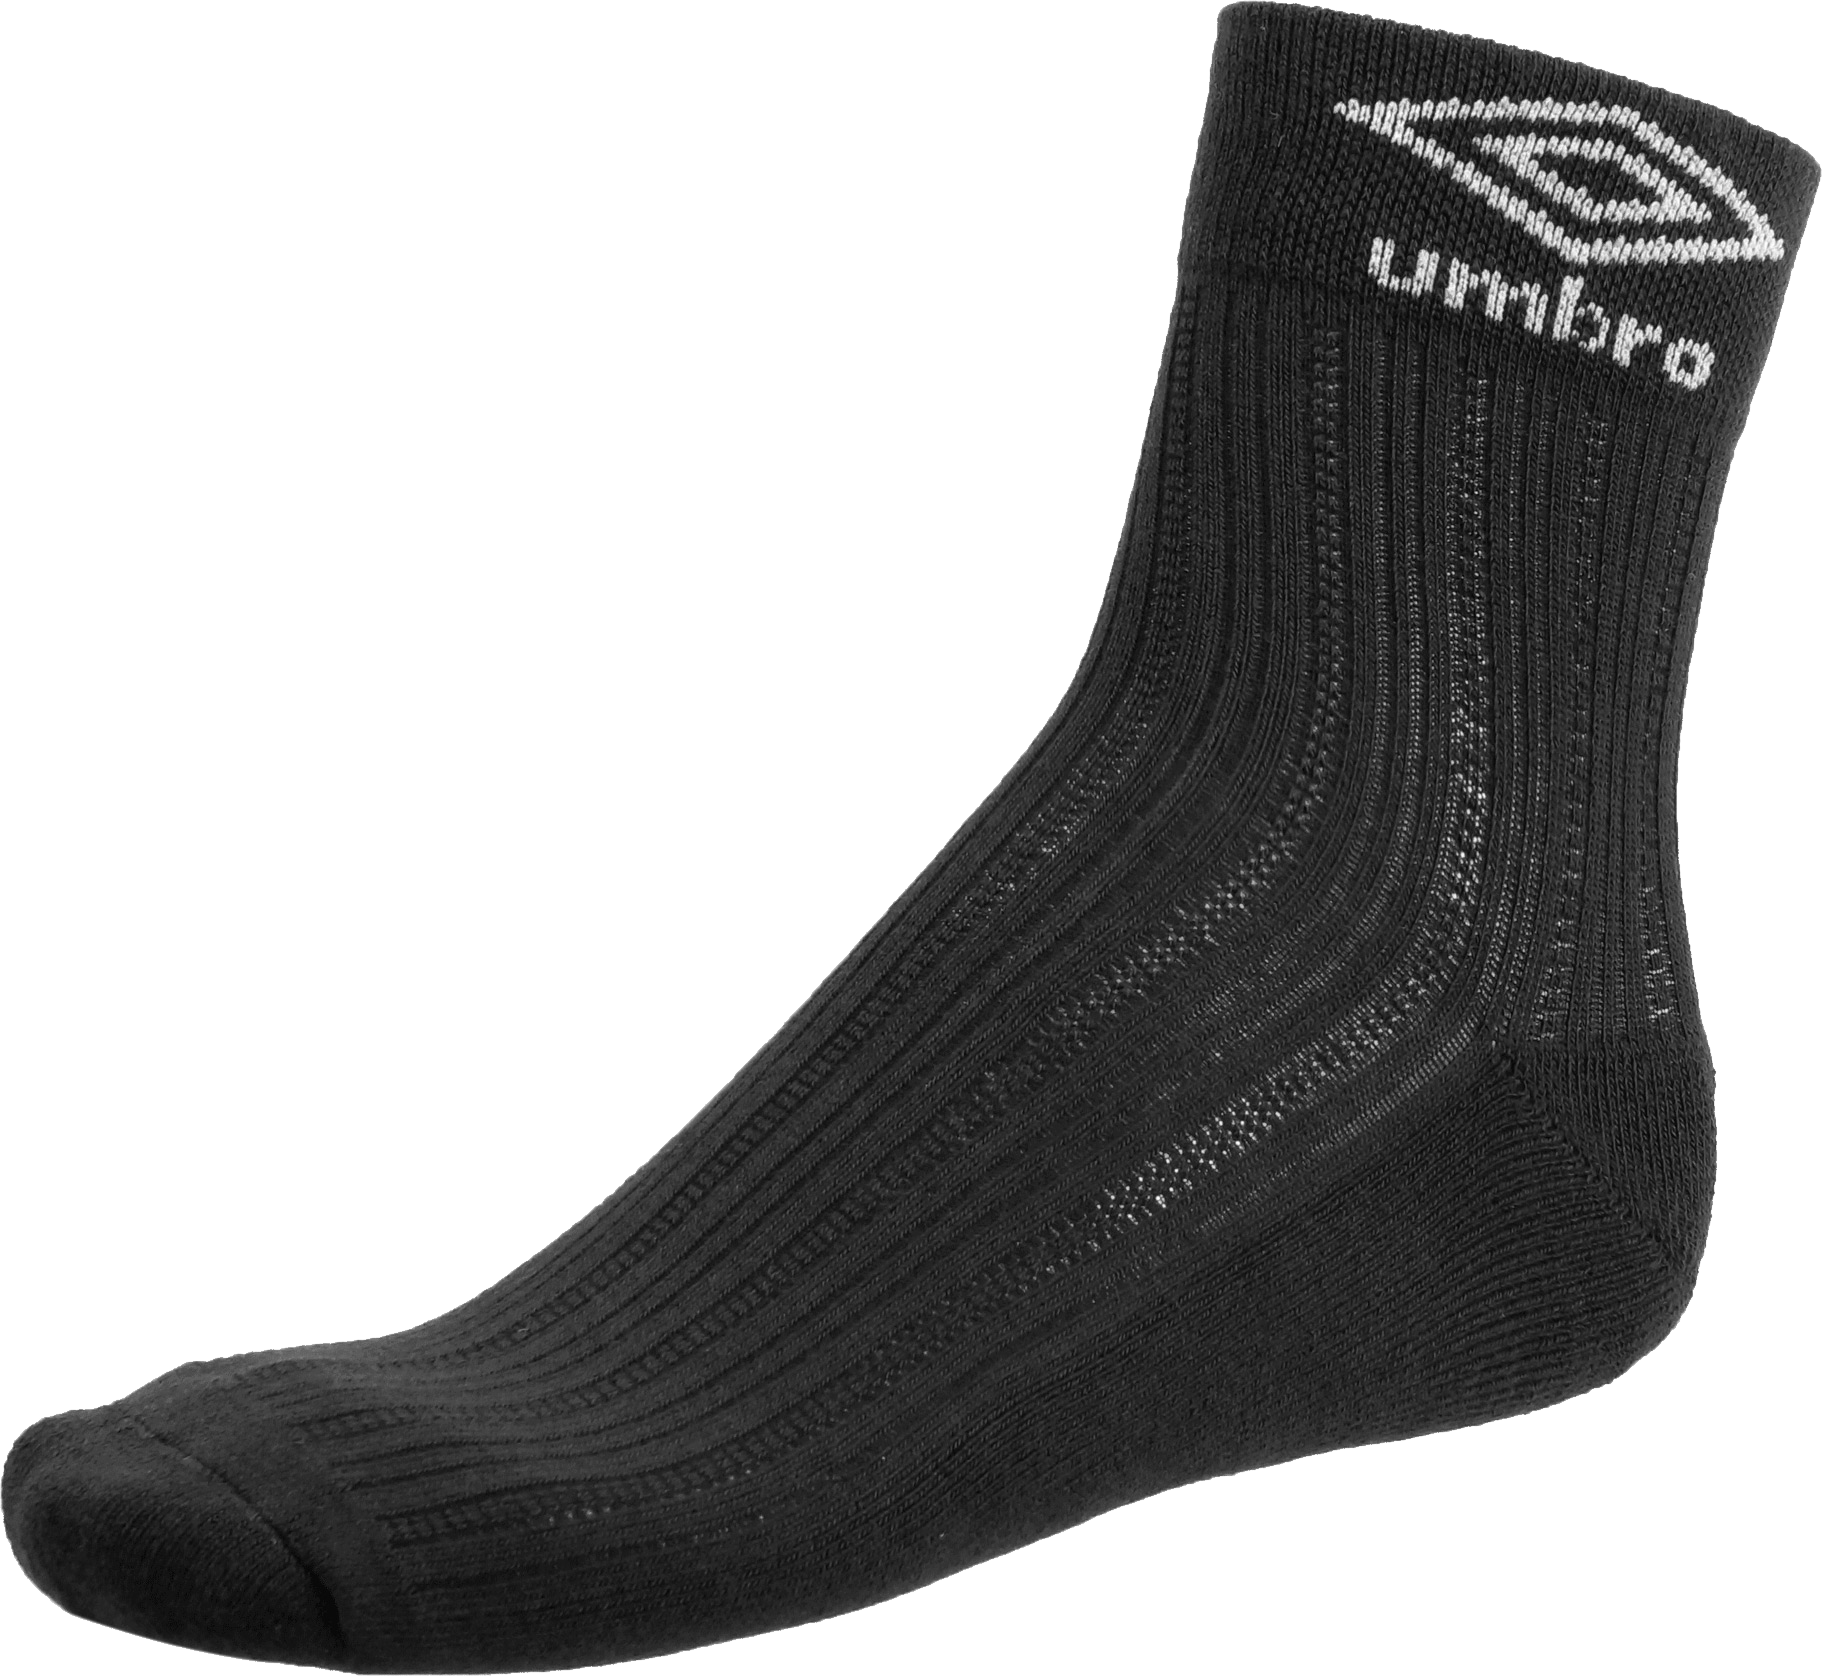 Umbro Black Socks PNG Image